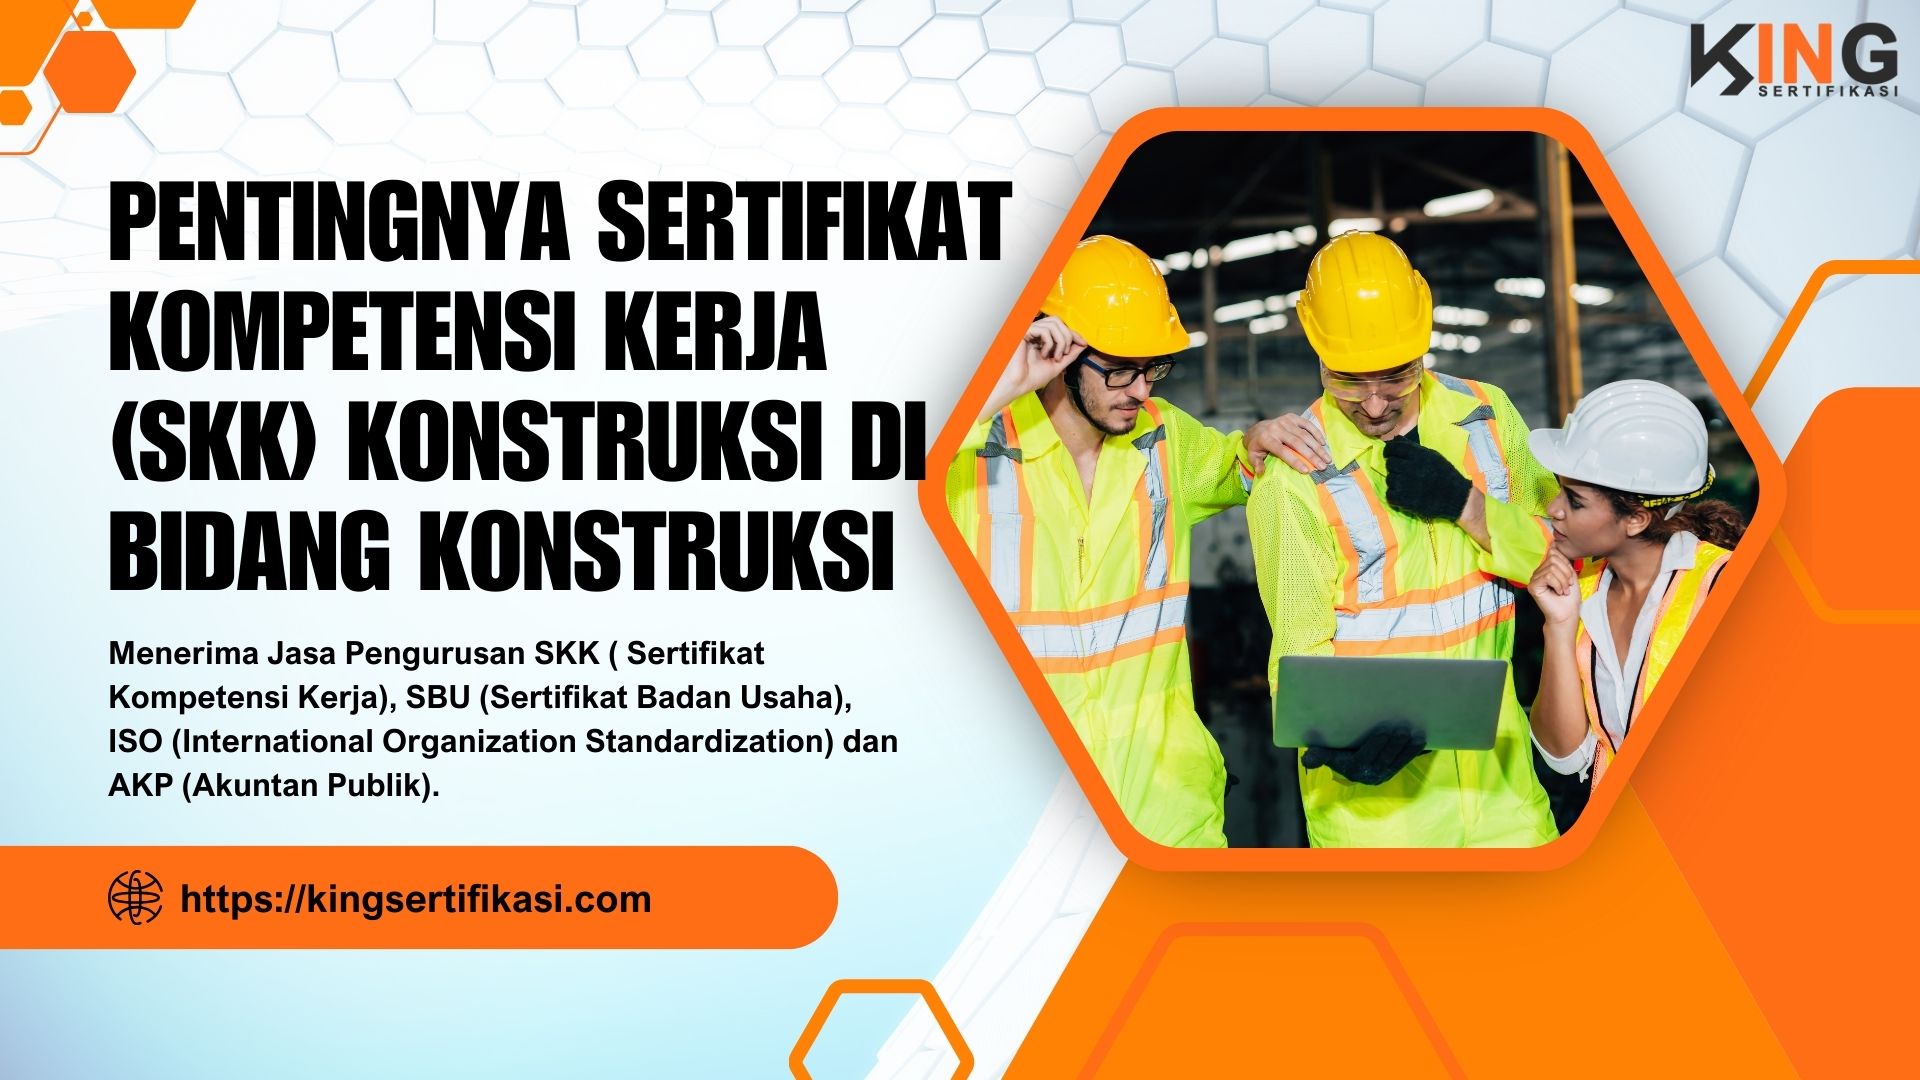 Pentingnya sertifikat kompetensi kerja (SKK) Konstruksi di bidang konstruksi